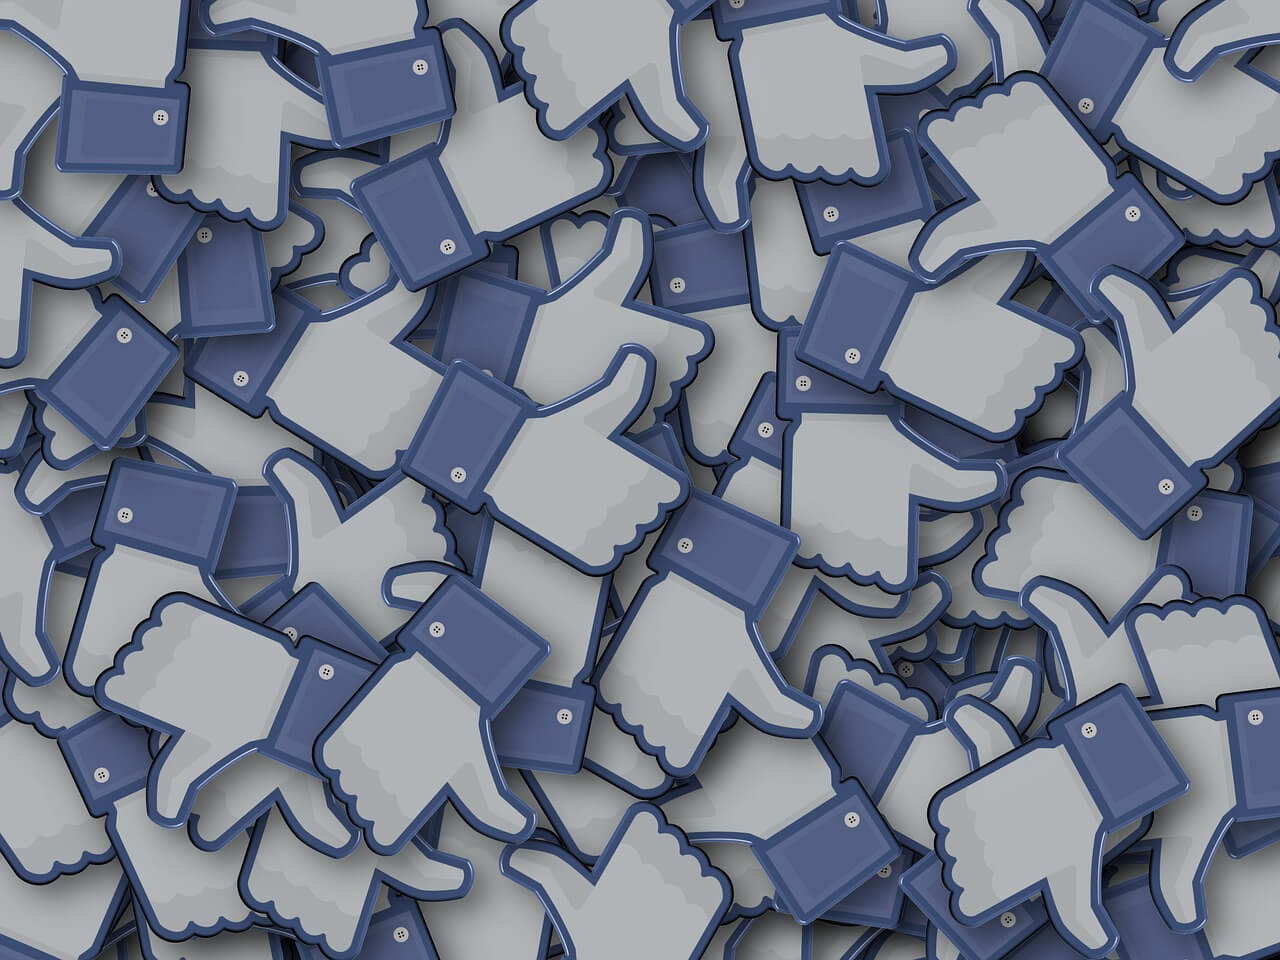 Negatywne opinie na Facebooku – jak się ich pozbyć?